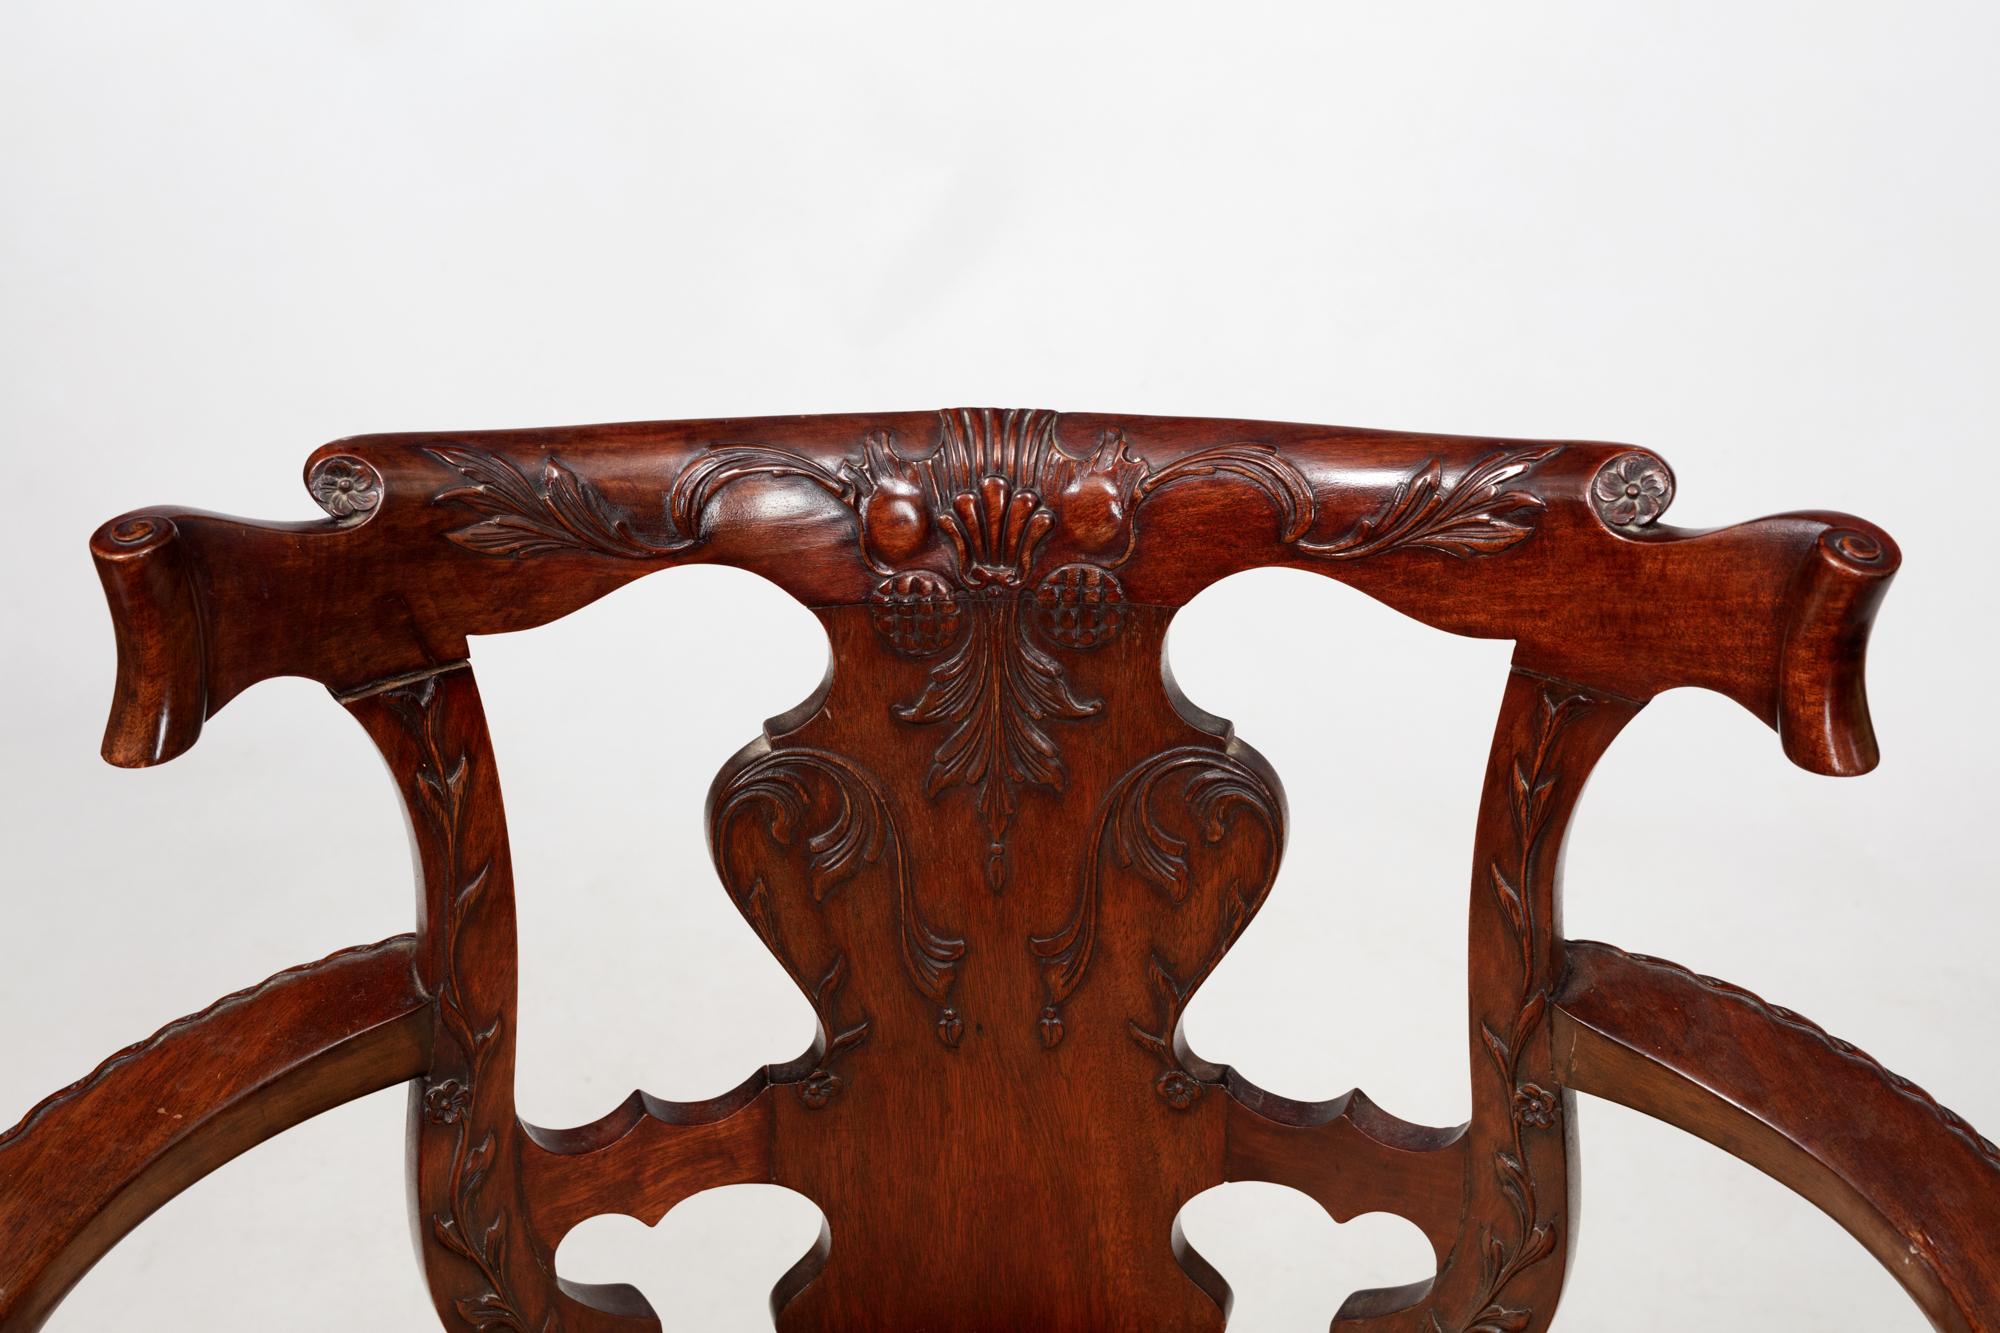 Fauteuil ouvert en acajou irlandais du XIXe siècle. Cette chaise de bureau de style géorgien est dotée d'un rebord et d'une traverse supérieure massifs et sculptés, d'accoudoirs inclinés, d'une assise ovale et d'une traverse d'assise à volutes,